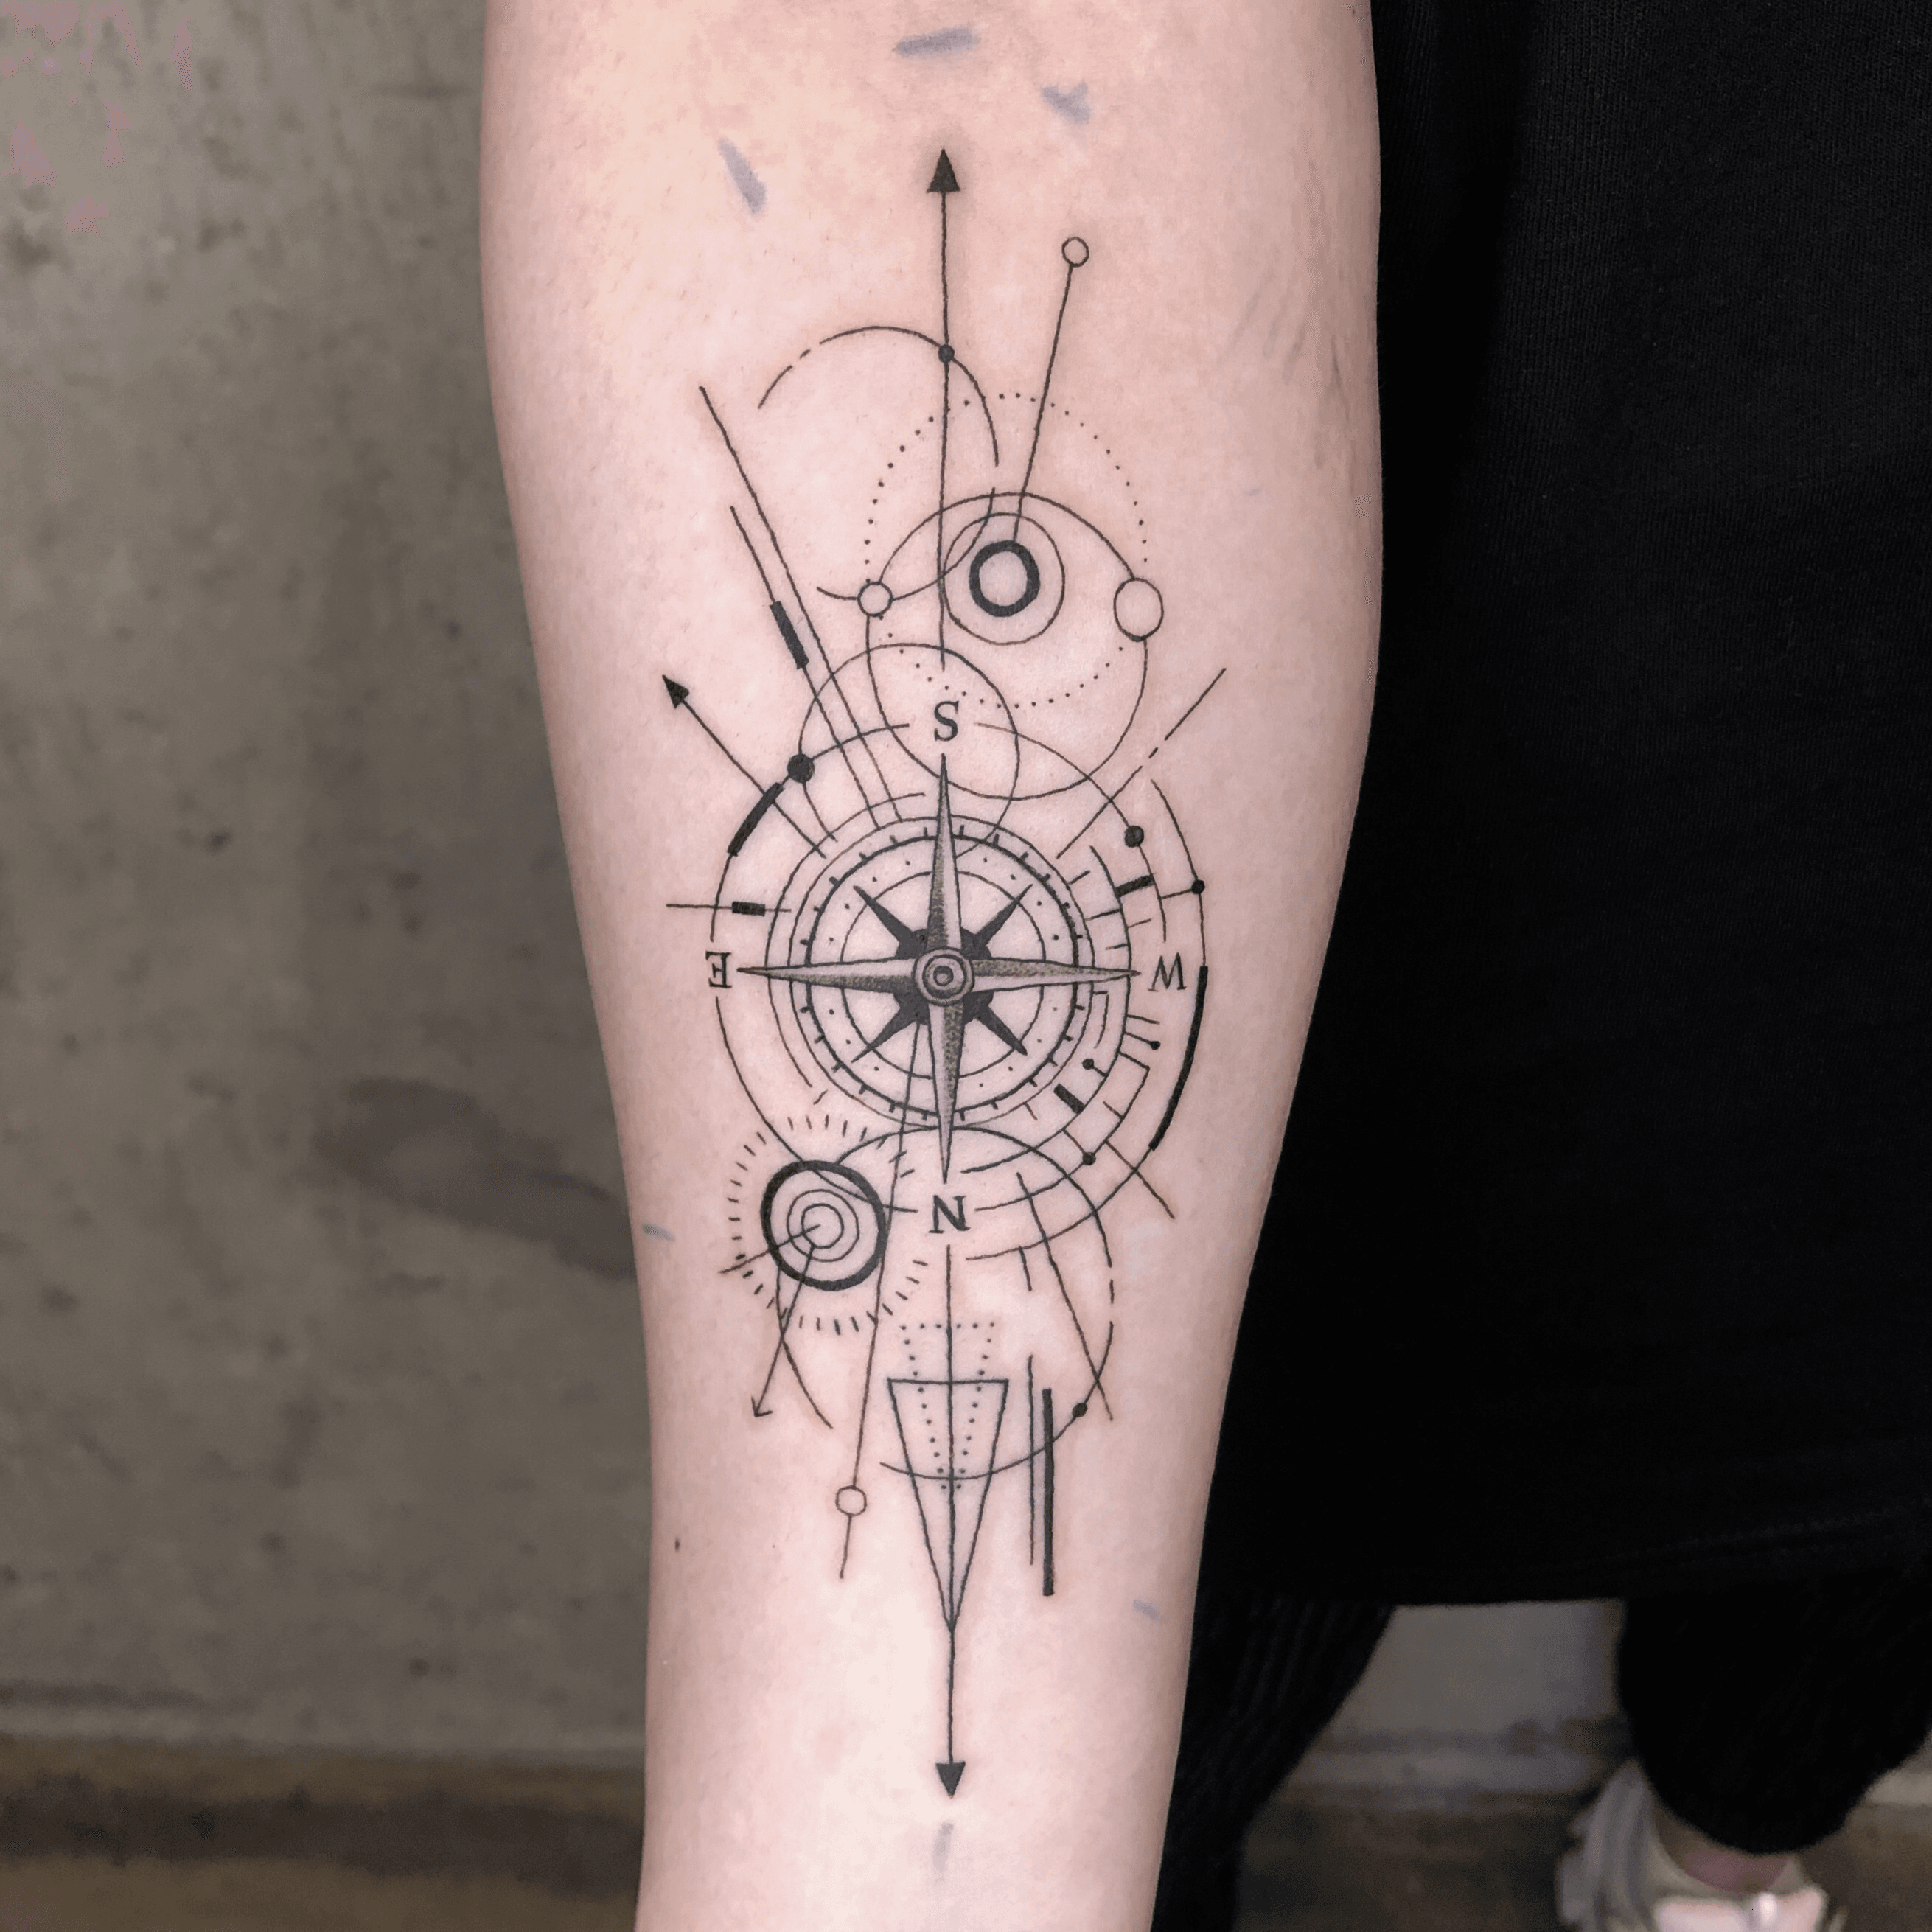 Tattoo uploaded by illson • Geometric compass . . . . #tattoo #tattoodesign  #blacktattooart #blackwork #tattooart #seoultattoo #tattrx #blacktattoo  #tttism #btattooing #koreatattoo #geometrictattoo #compass #compasstattoo # 타투 #문신 #타투도안 ...